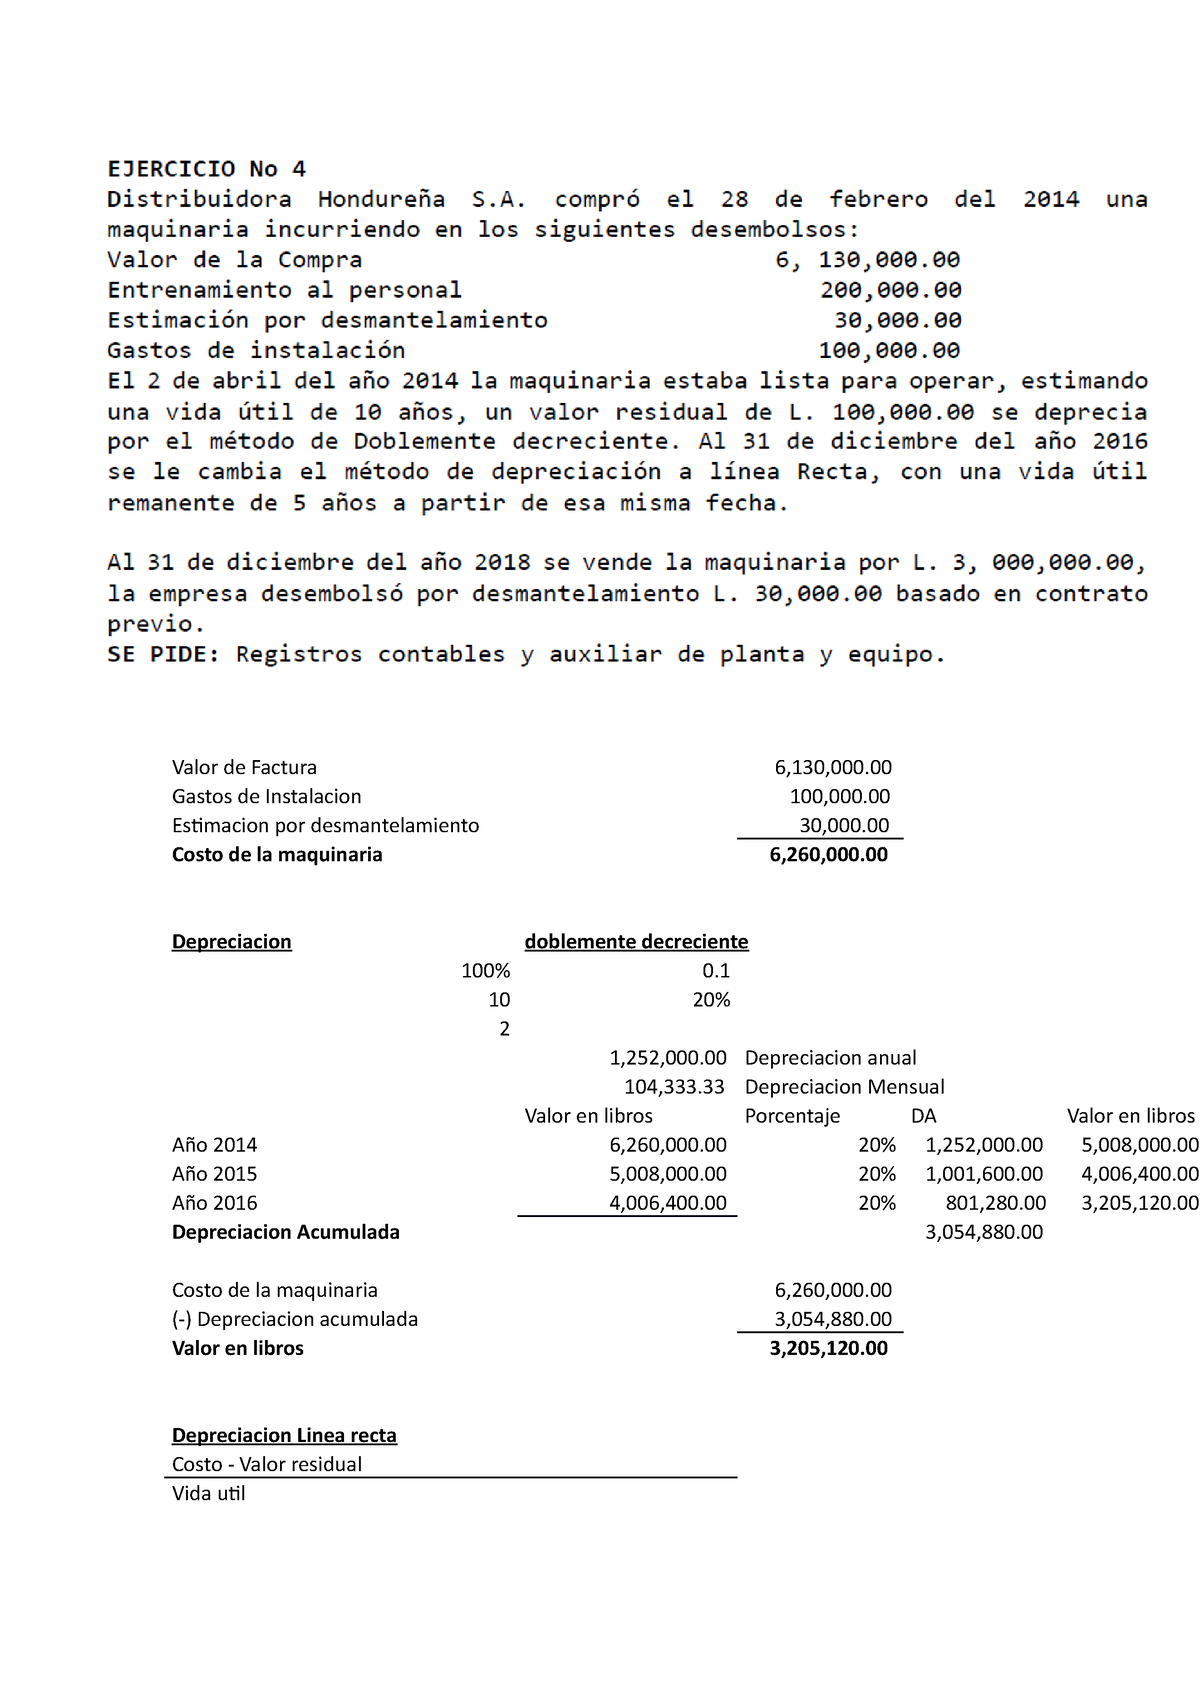 Ejercicio 4 - Depreciaciones - Valor de Factura 6,130,000. Gastos de ...